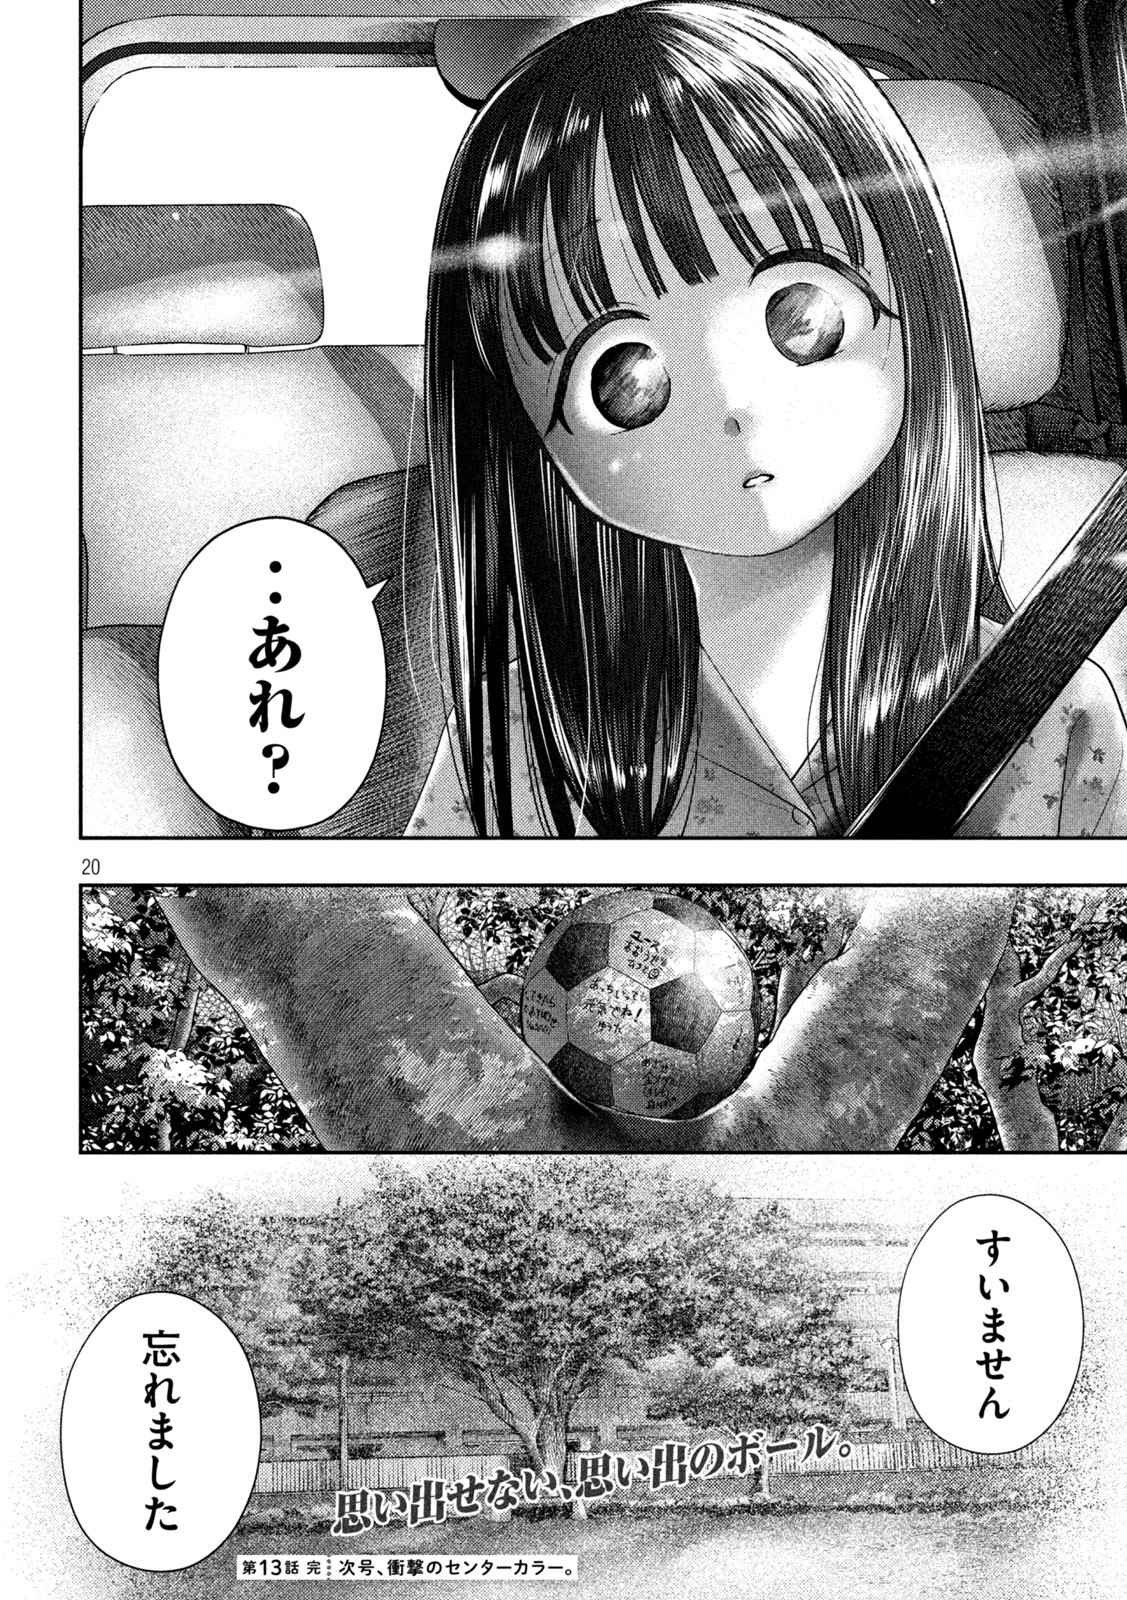 Nezumi no Koi - Chapter 13 - Page 20